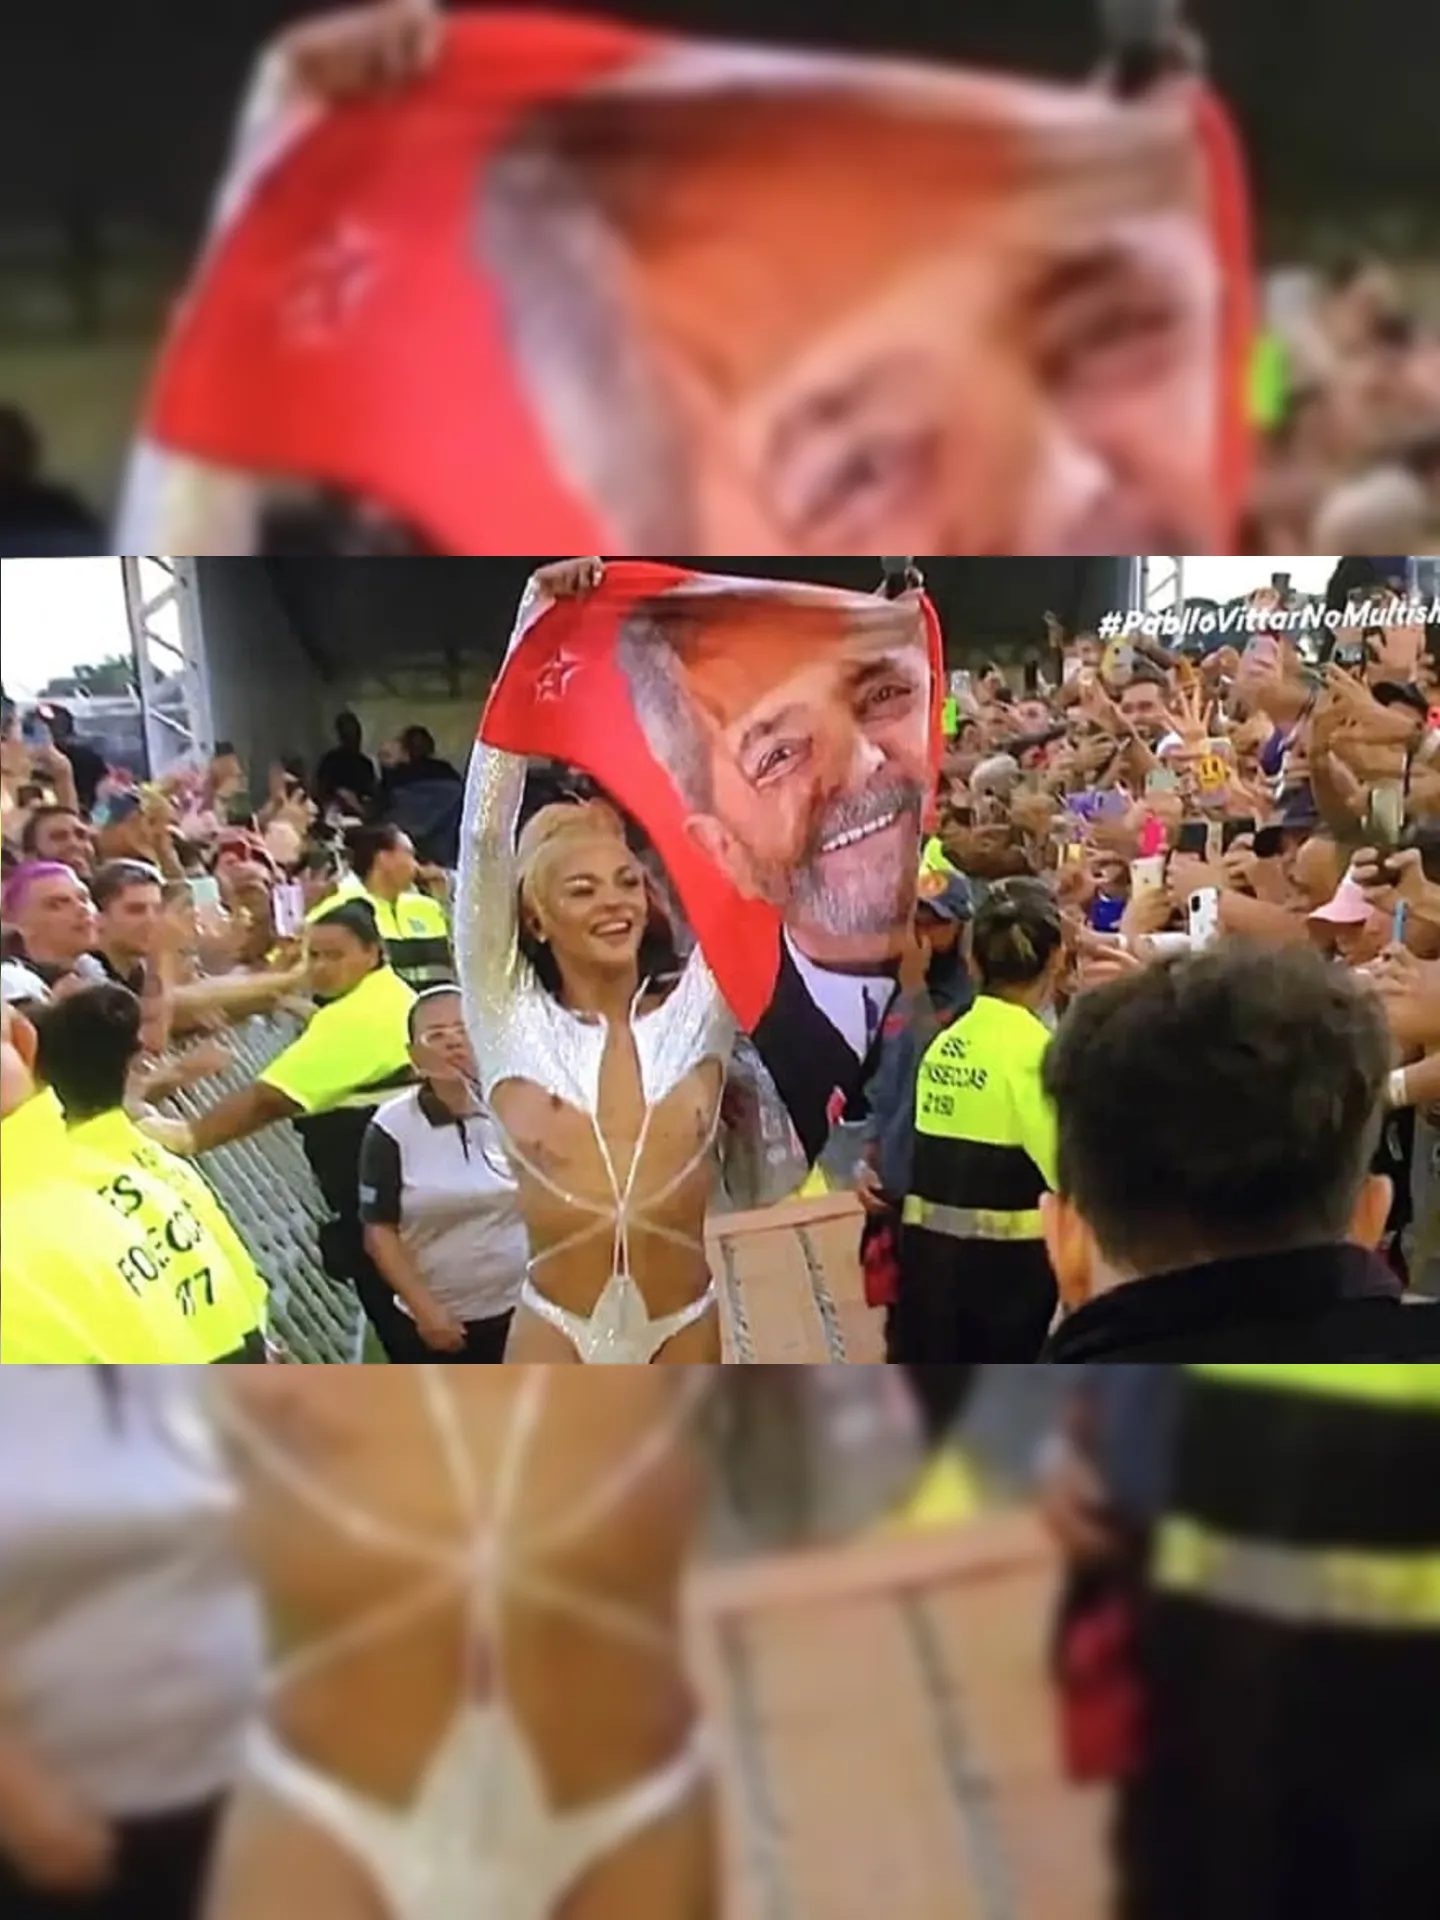 No show realizado nesta sexta-feira, Pabllo entou um coro de "Fora Bolsonaro" e levantou uma bandeira com o rosto do ex-presidente Lula enquanto andava pela passarela do local.